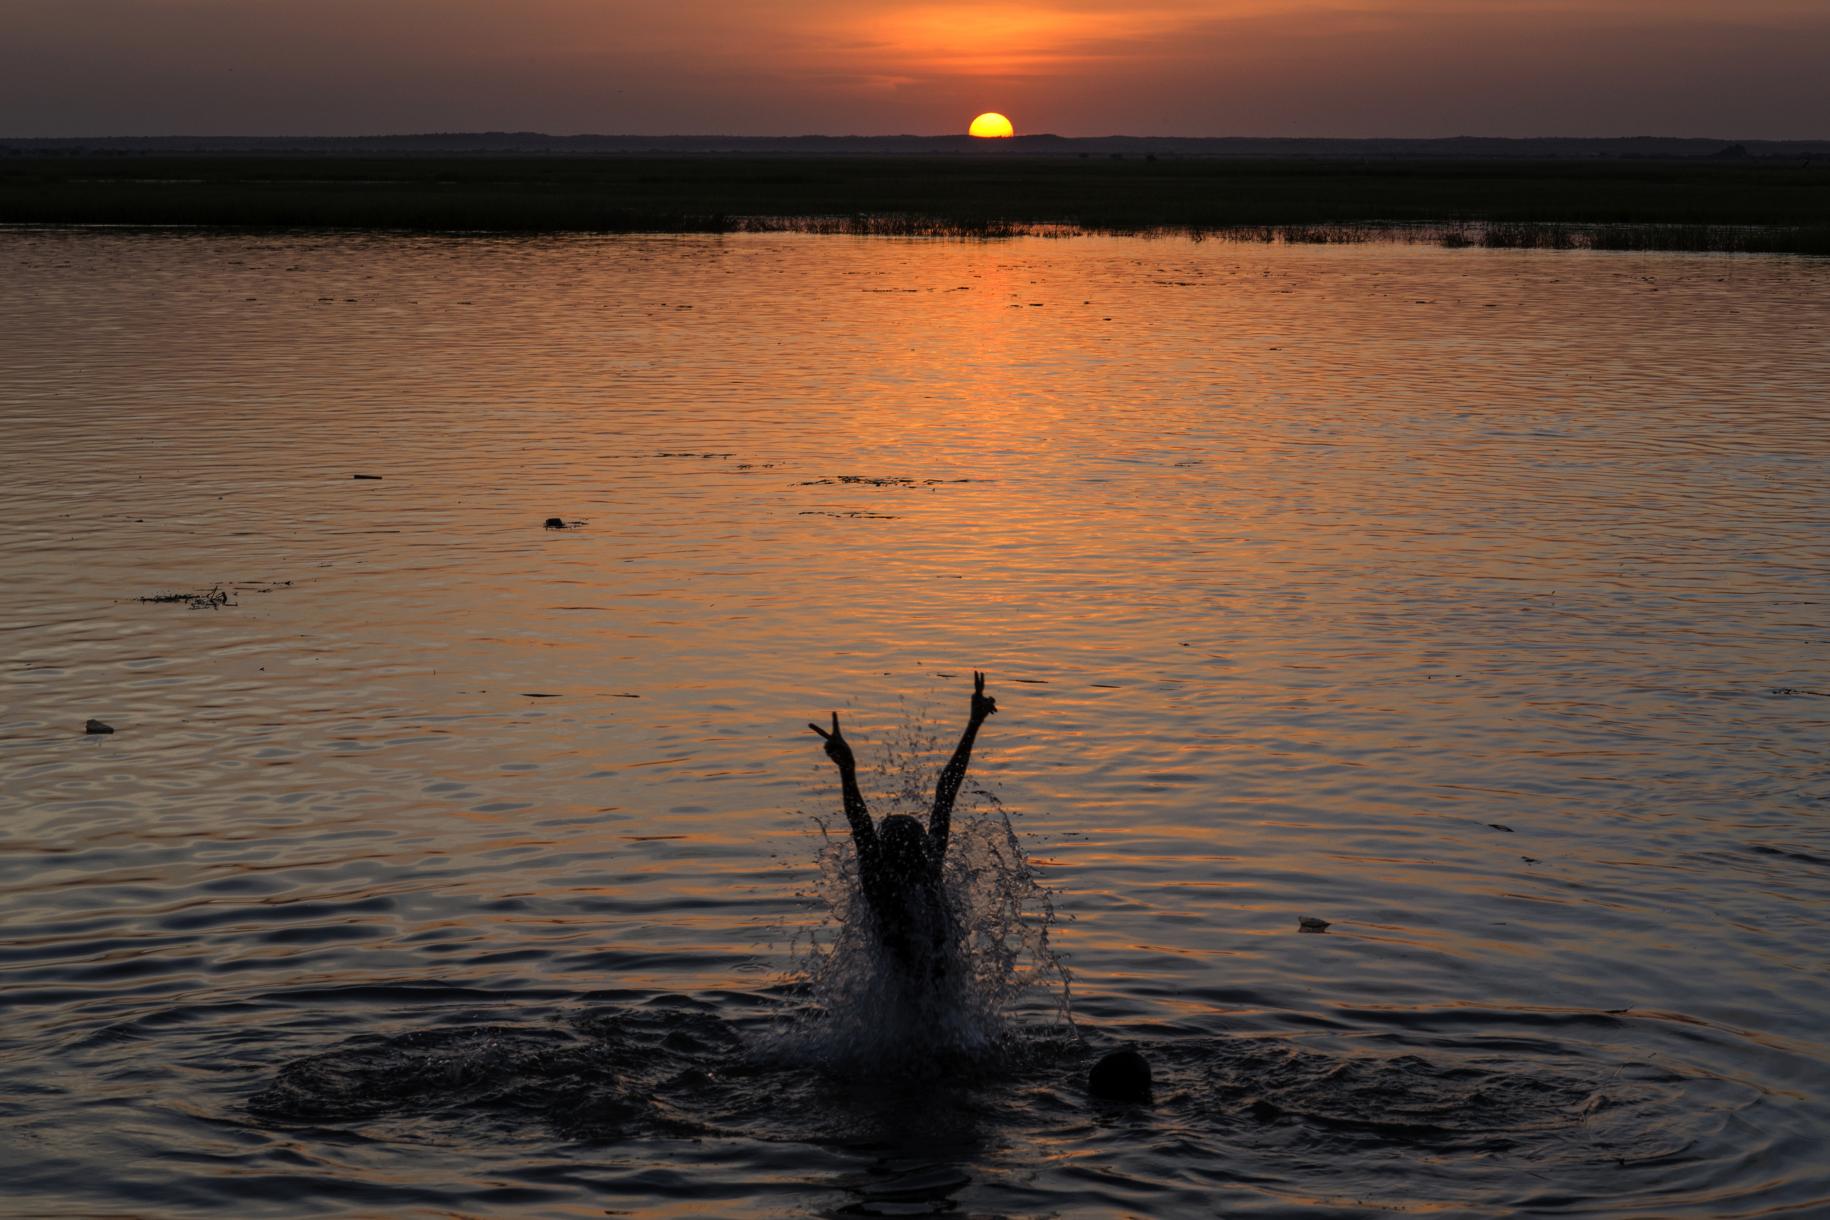 مرأة تقفز في الماء وترفع ذراعاها وسط غروب الشمس.